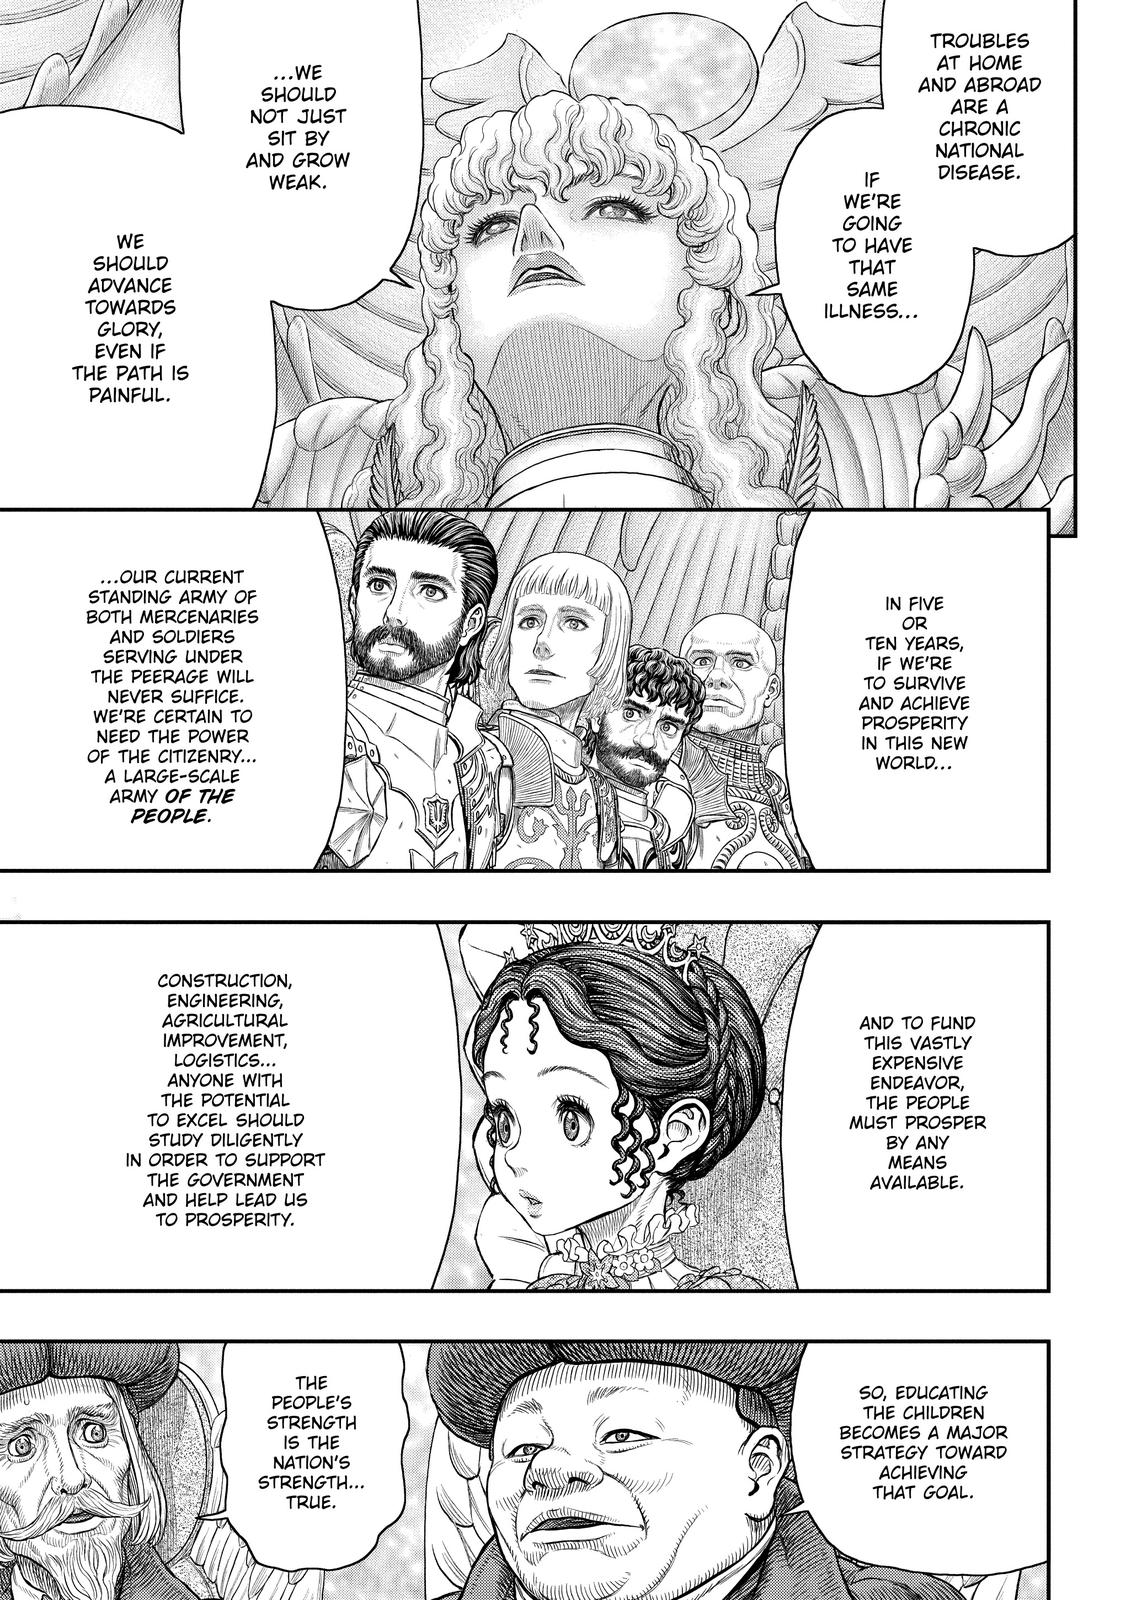 Berserk Manga Chapter 358 image 18